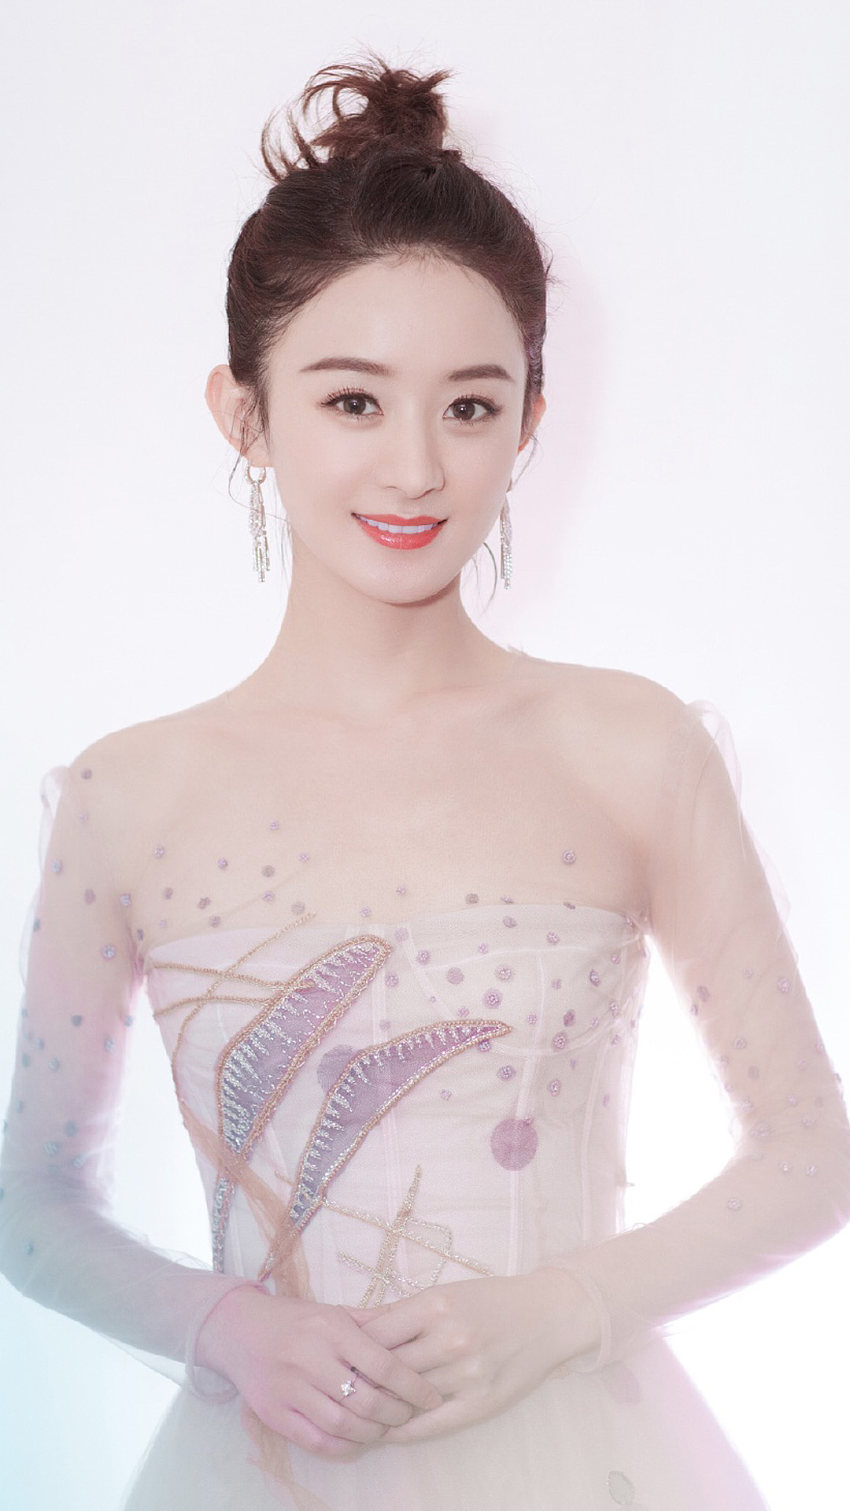 中國十大美女排行榜 娛樂圈最美十大女明星-圖2